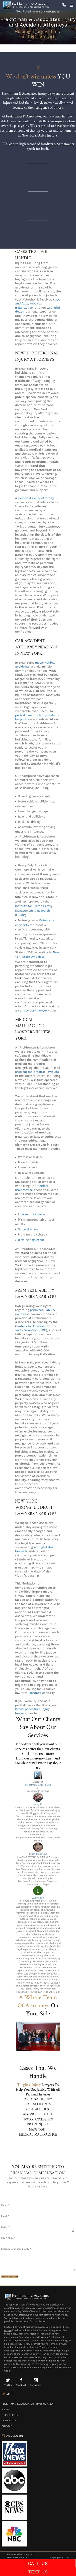 Frekhtman & Associates - New York NY Lawyers